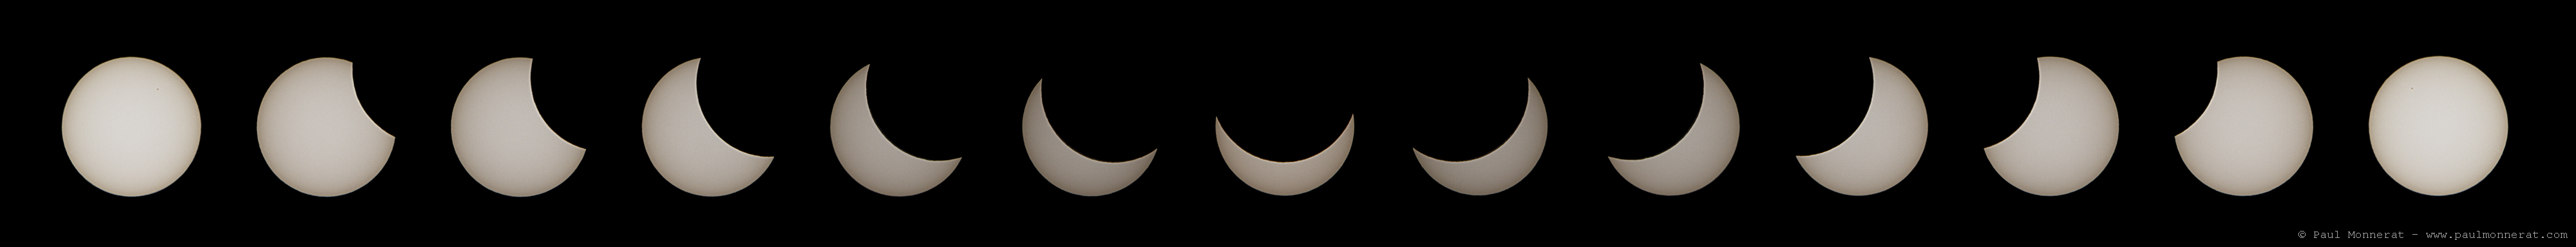 Eclipse solaire partielle depuis l'Ajoie, 20 mars 2015